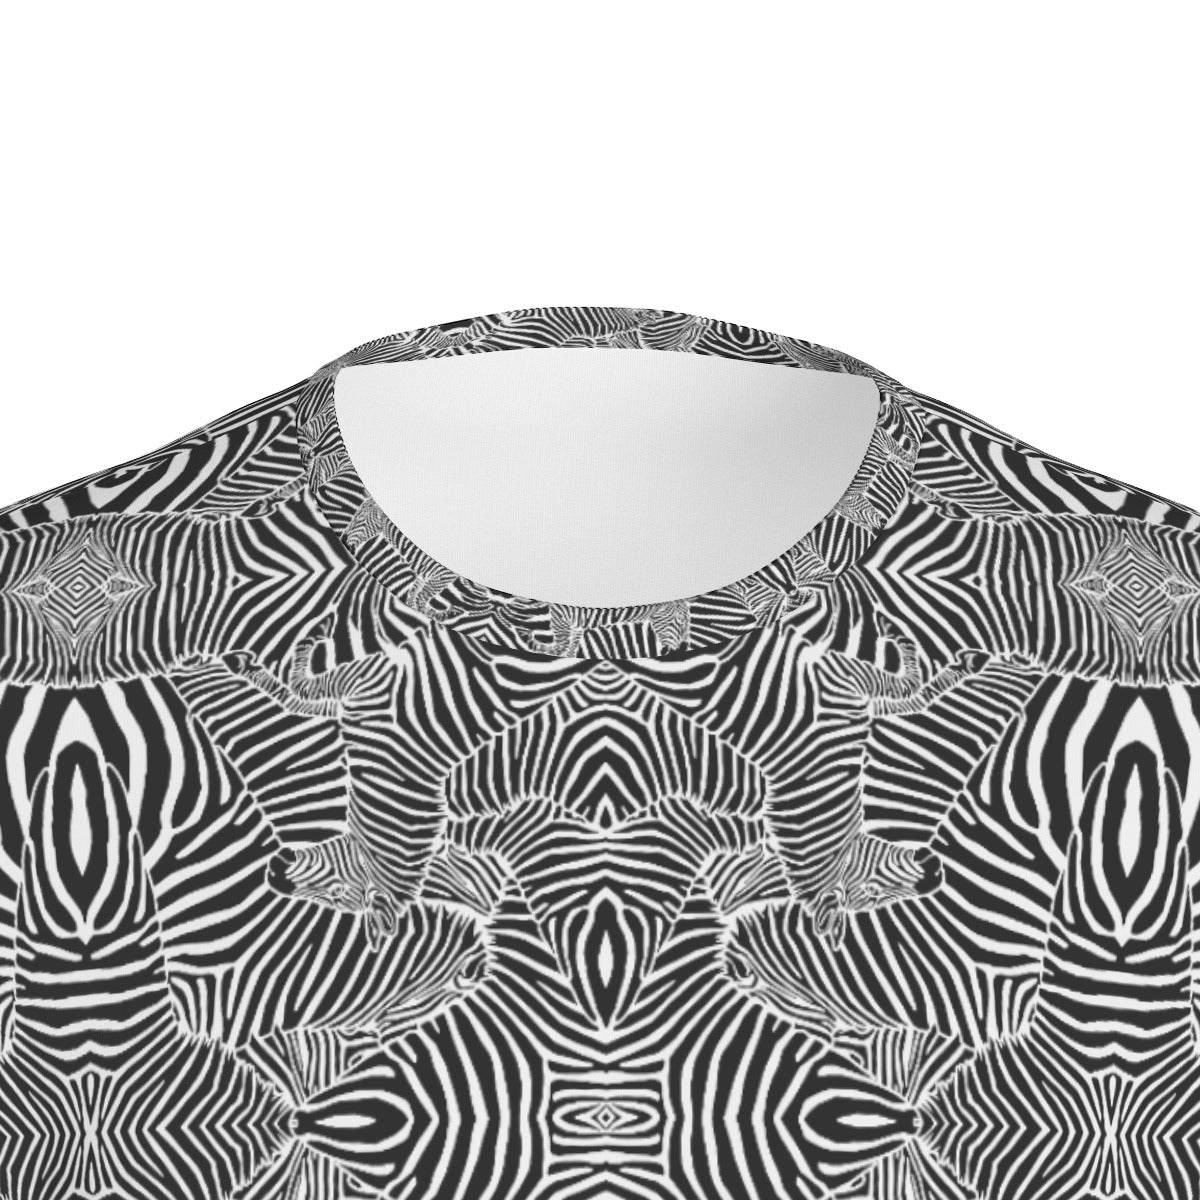 Zebra Vibe T-Shirt